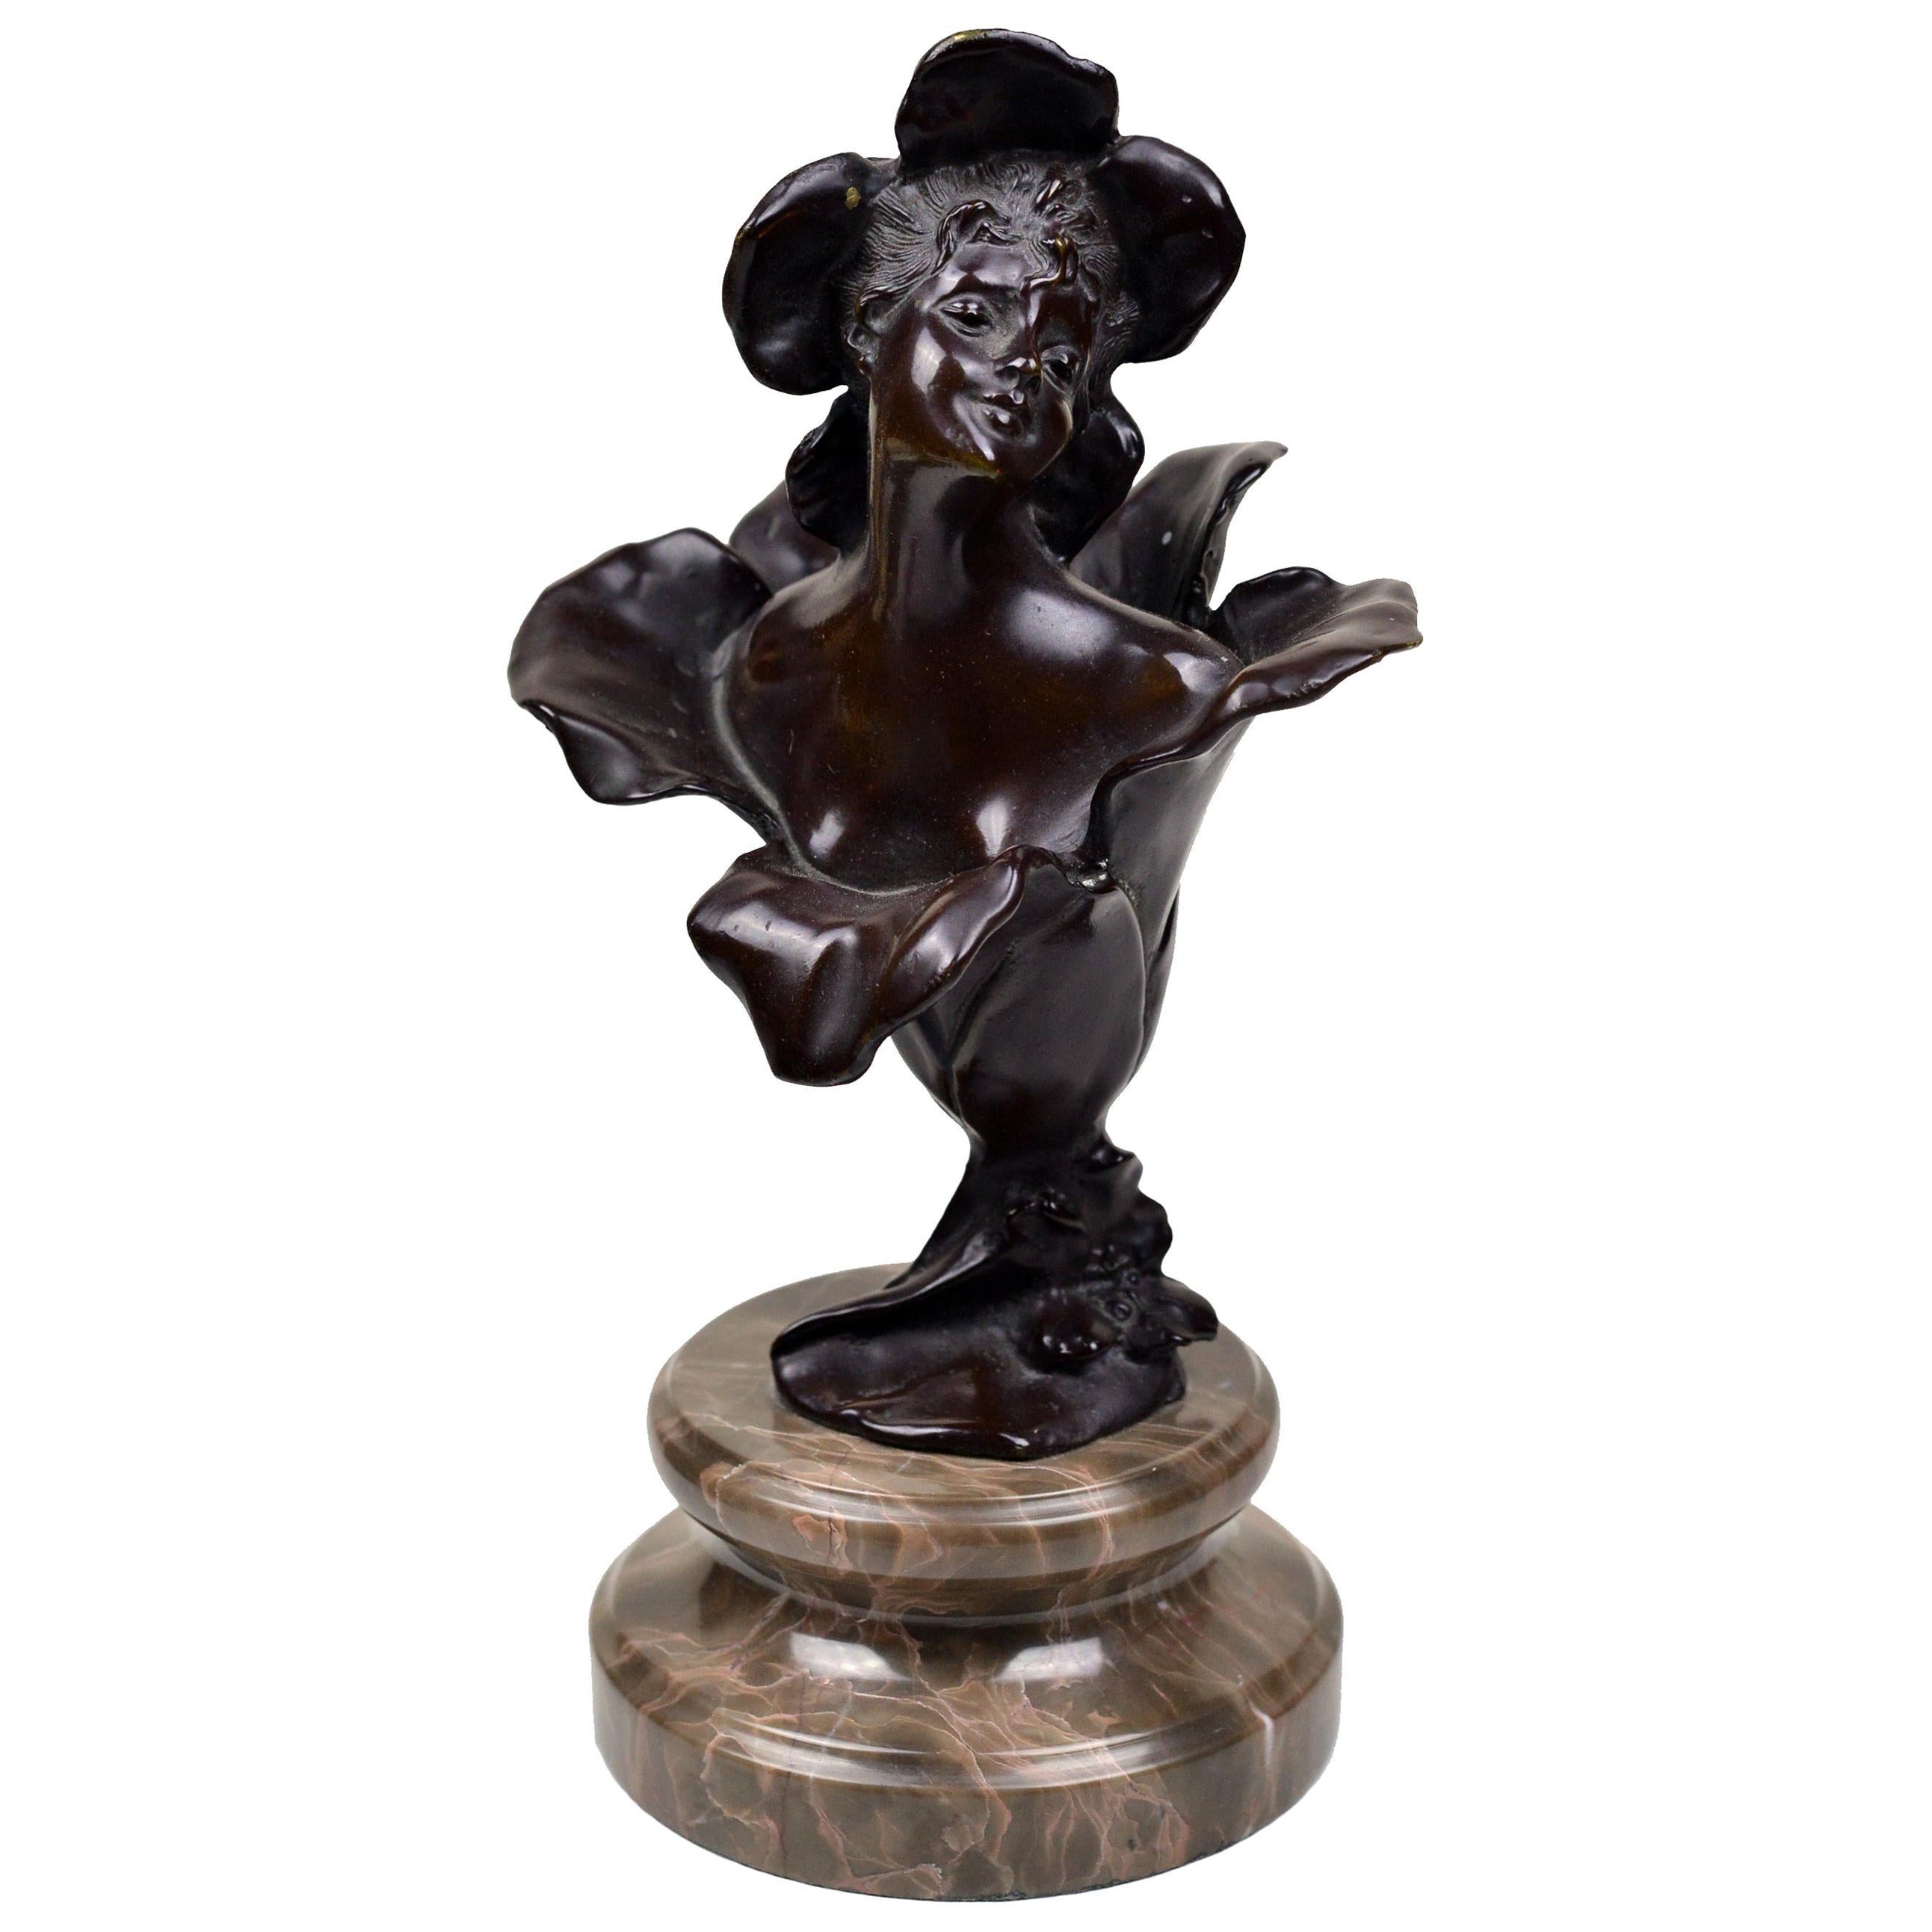 Figurine de Thumbelina en bronze patiné à base de pierre 19ème siècle Art Nouveau